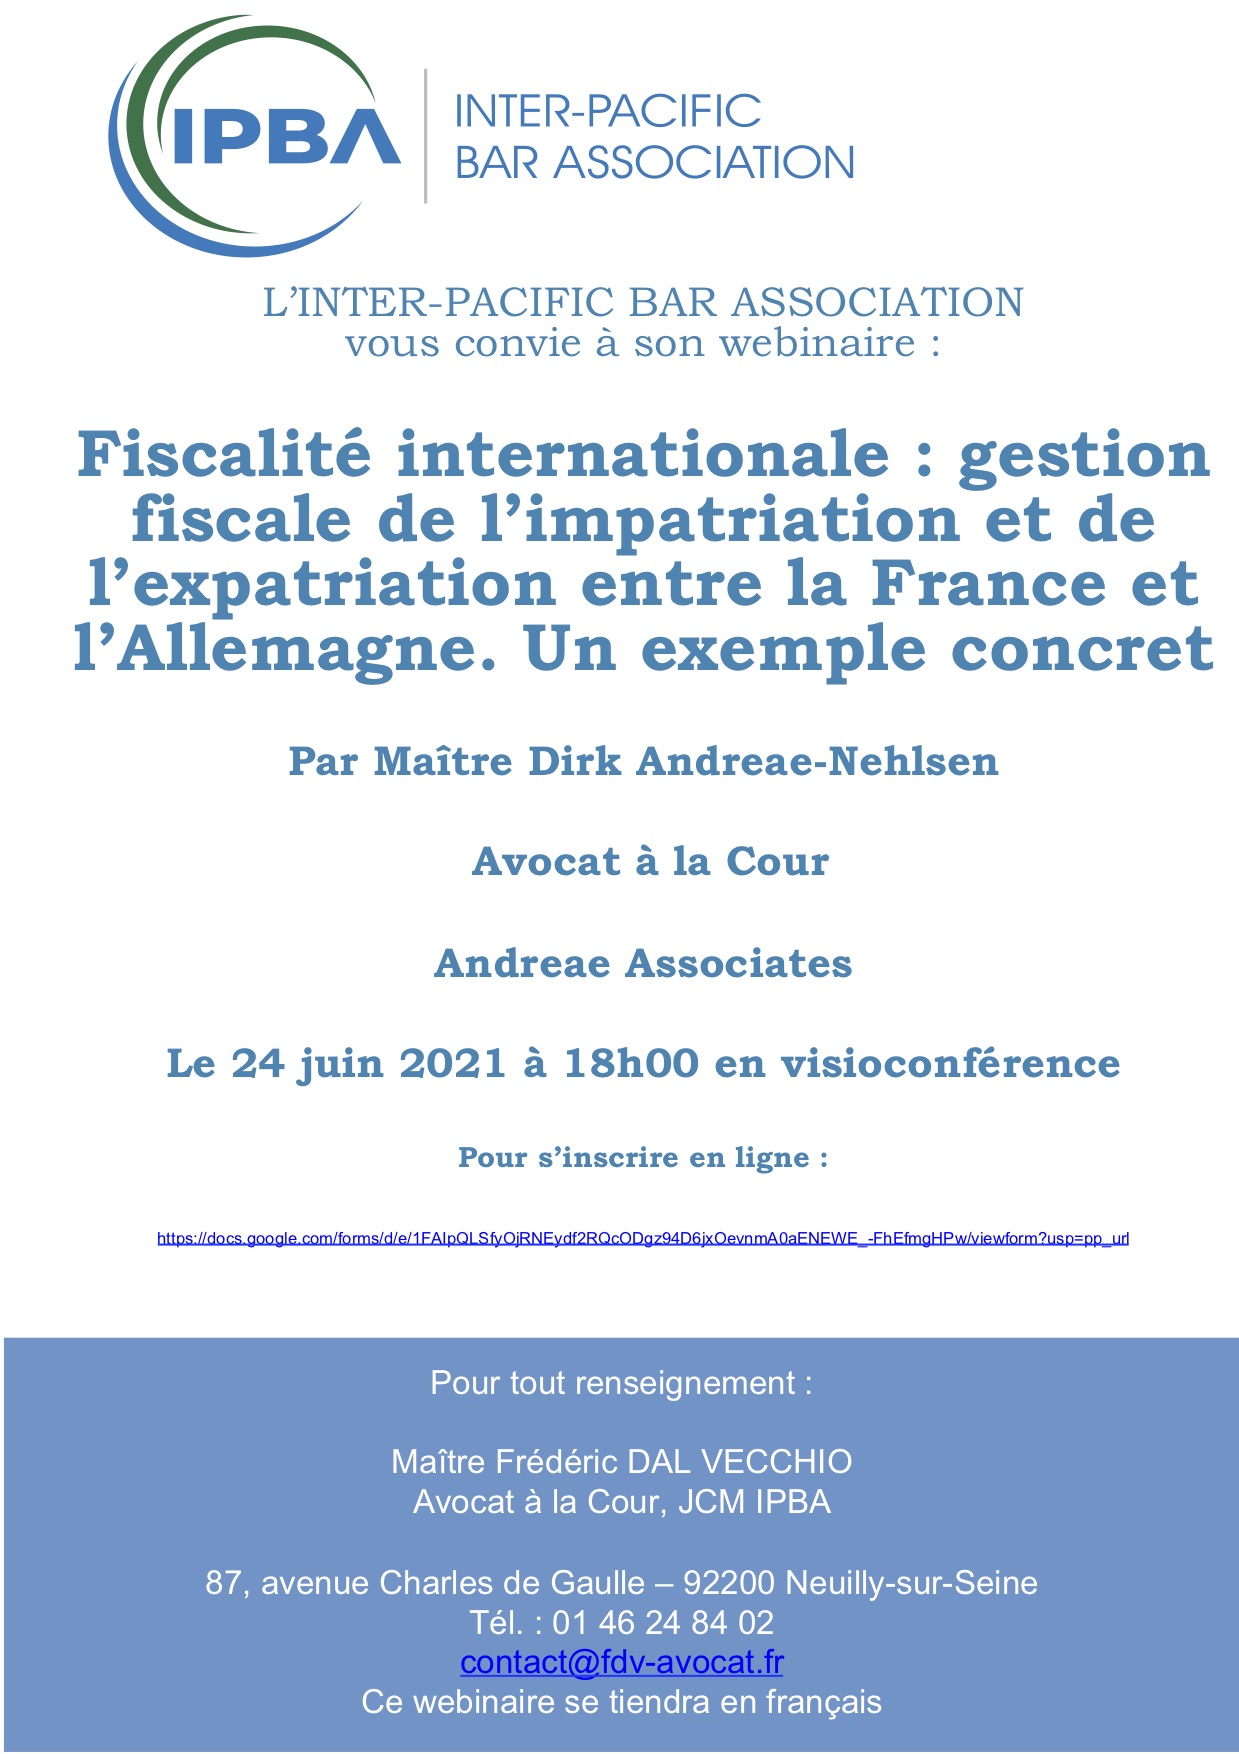 IPBA - Webinaire 24 juin 2021 (18h00) - Fiscalité internationale : gestion fiscale de l’impatriation et de l’expatriation entre la France et l’Allemagne. Un exemple concret